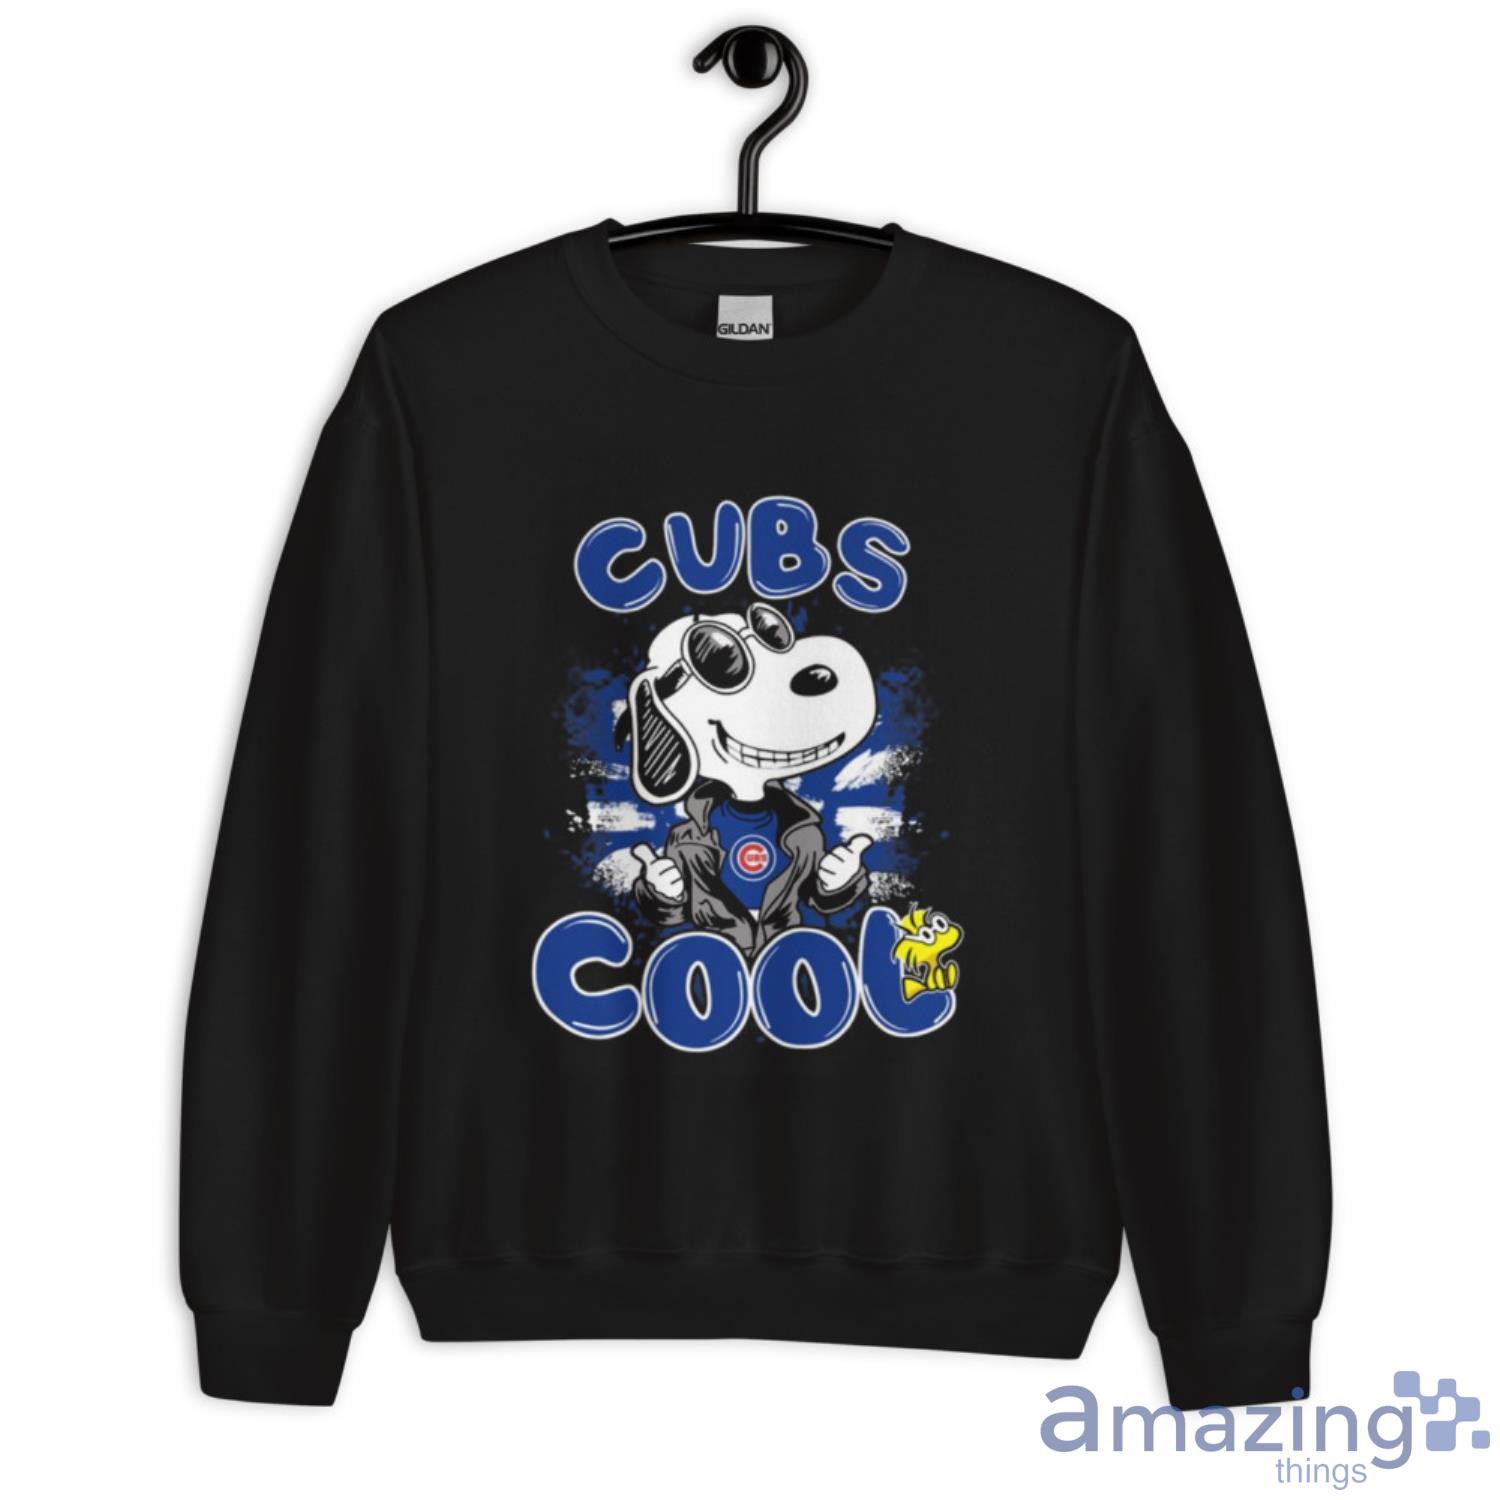 Chicago Cubs Black Pullover Jersey Shirt True Fan MLB Baseball